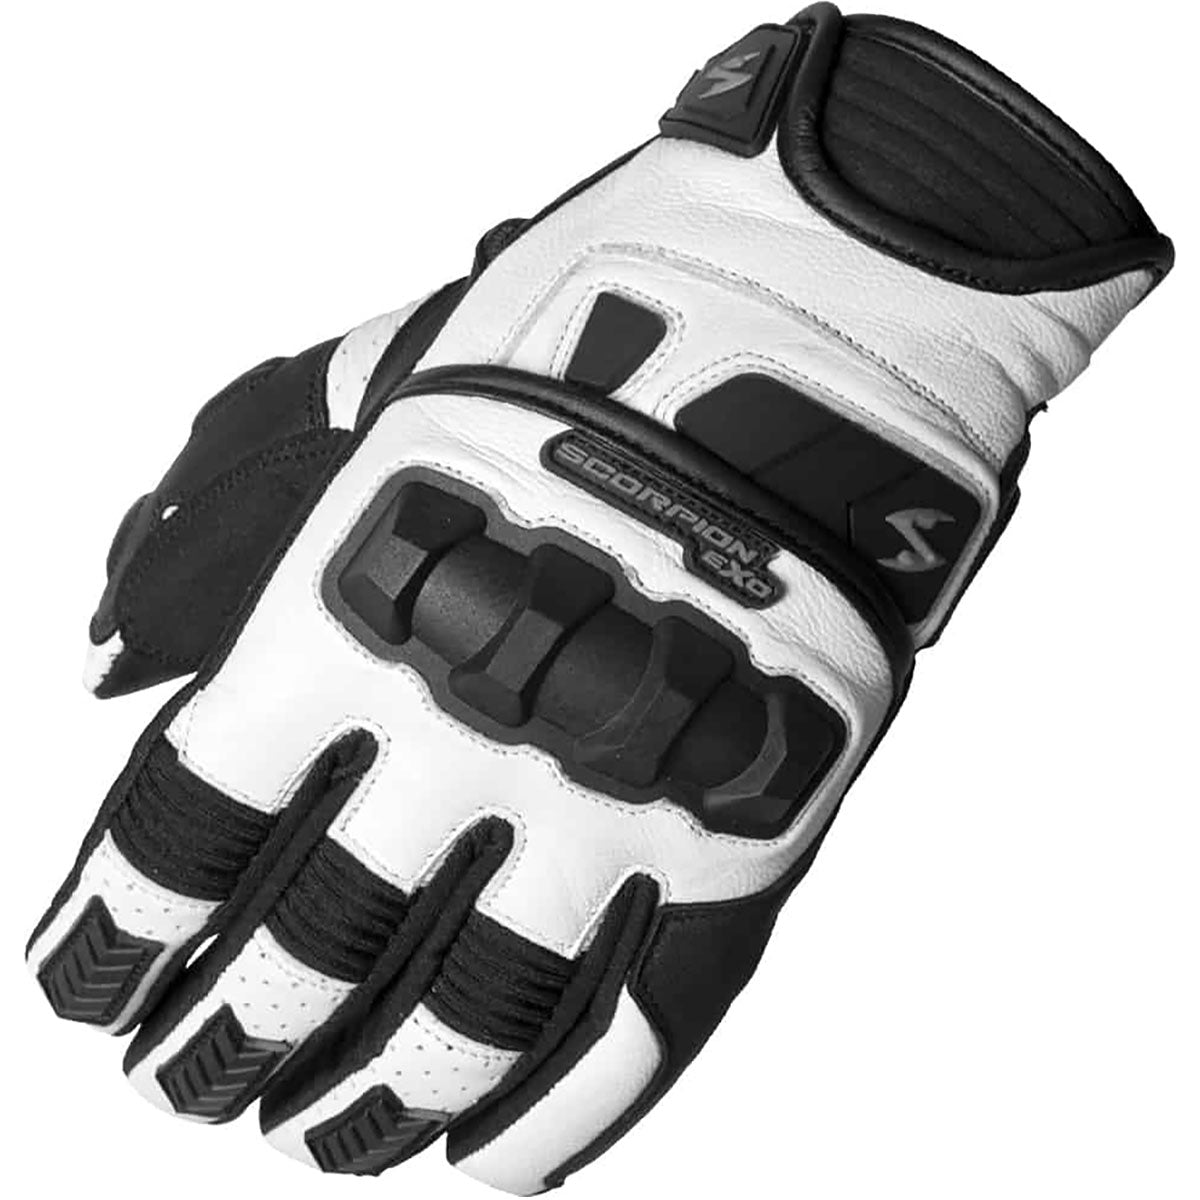 Scorpion EXO Klaw II Men's Street Gloves-75-5741